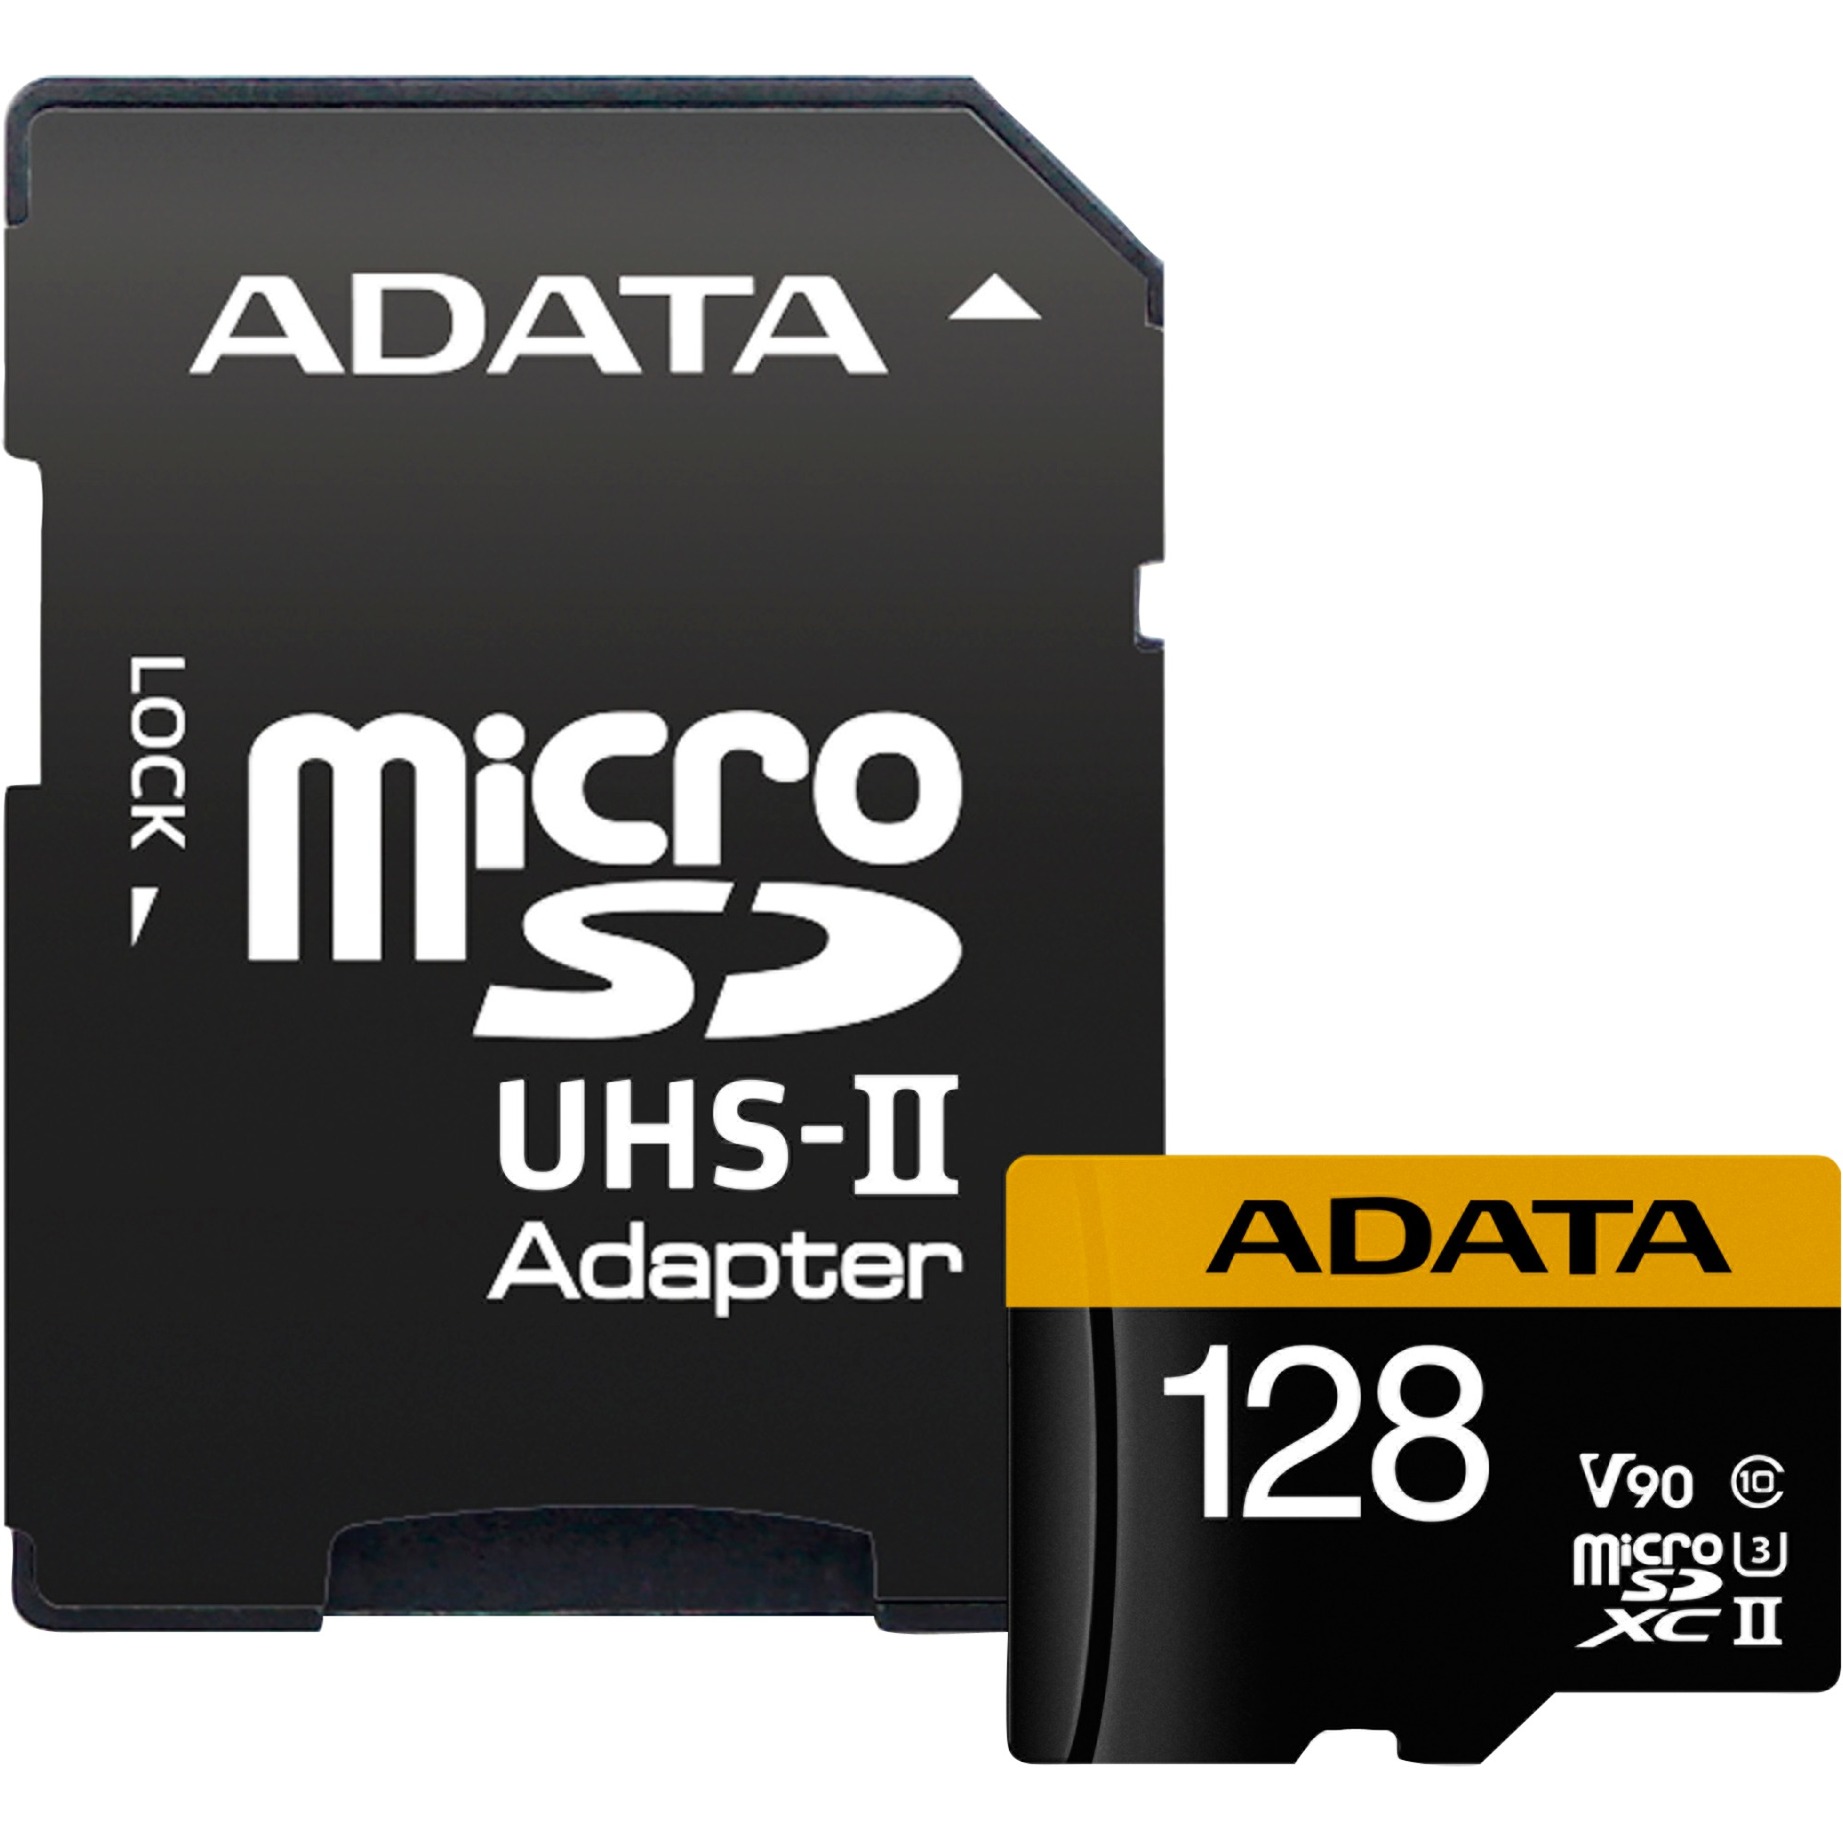 Image of Alternate - Premier One 128 GB microSDXC, Speicherkarte online einkaufen bei Alternate